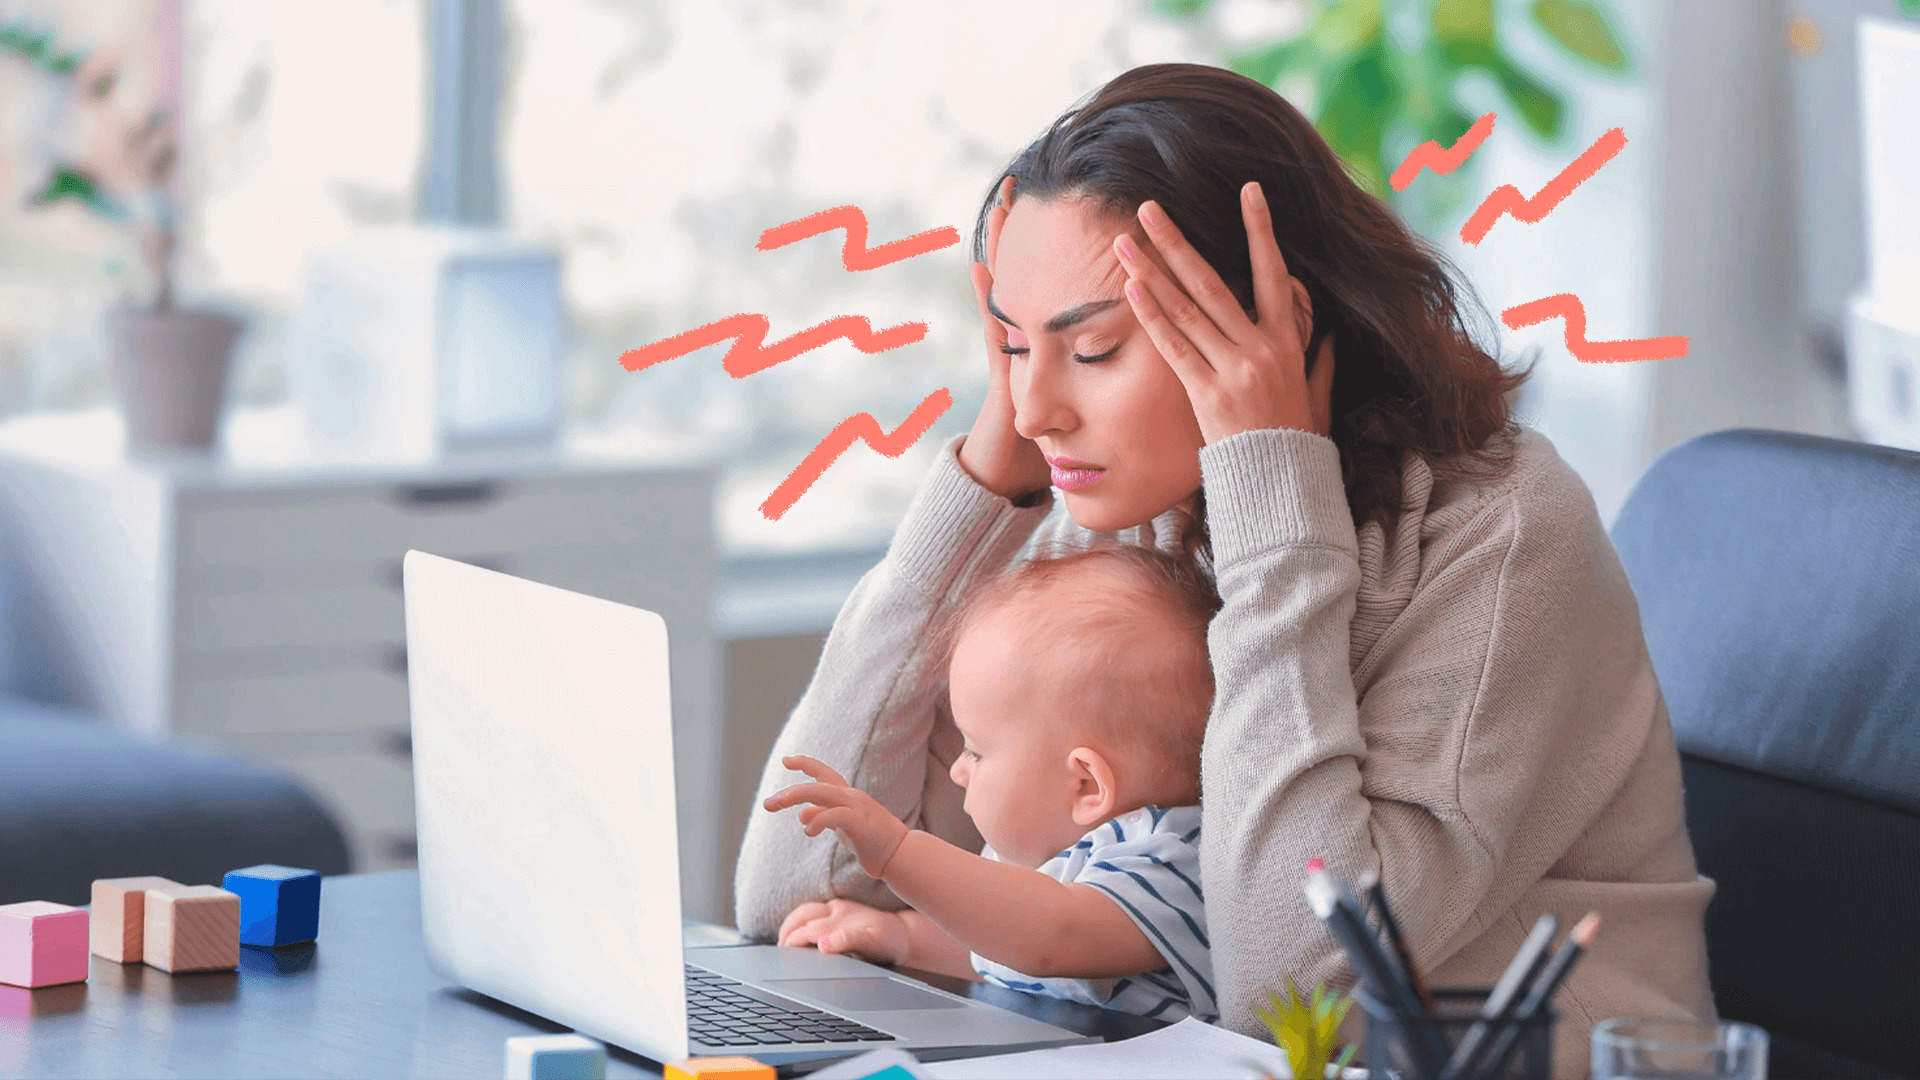 Uma mulher com um bebê no colo está em frente a um computador com as mãos na cabeça. A matéria traz perguntas sobre maternidade "sem noção" e sugestões de como respondê-las.